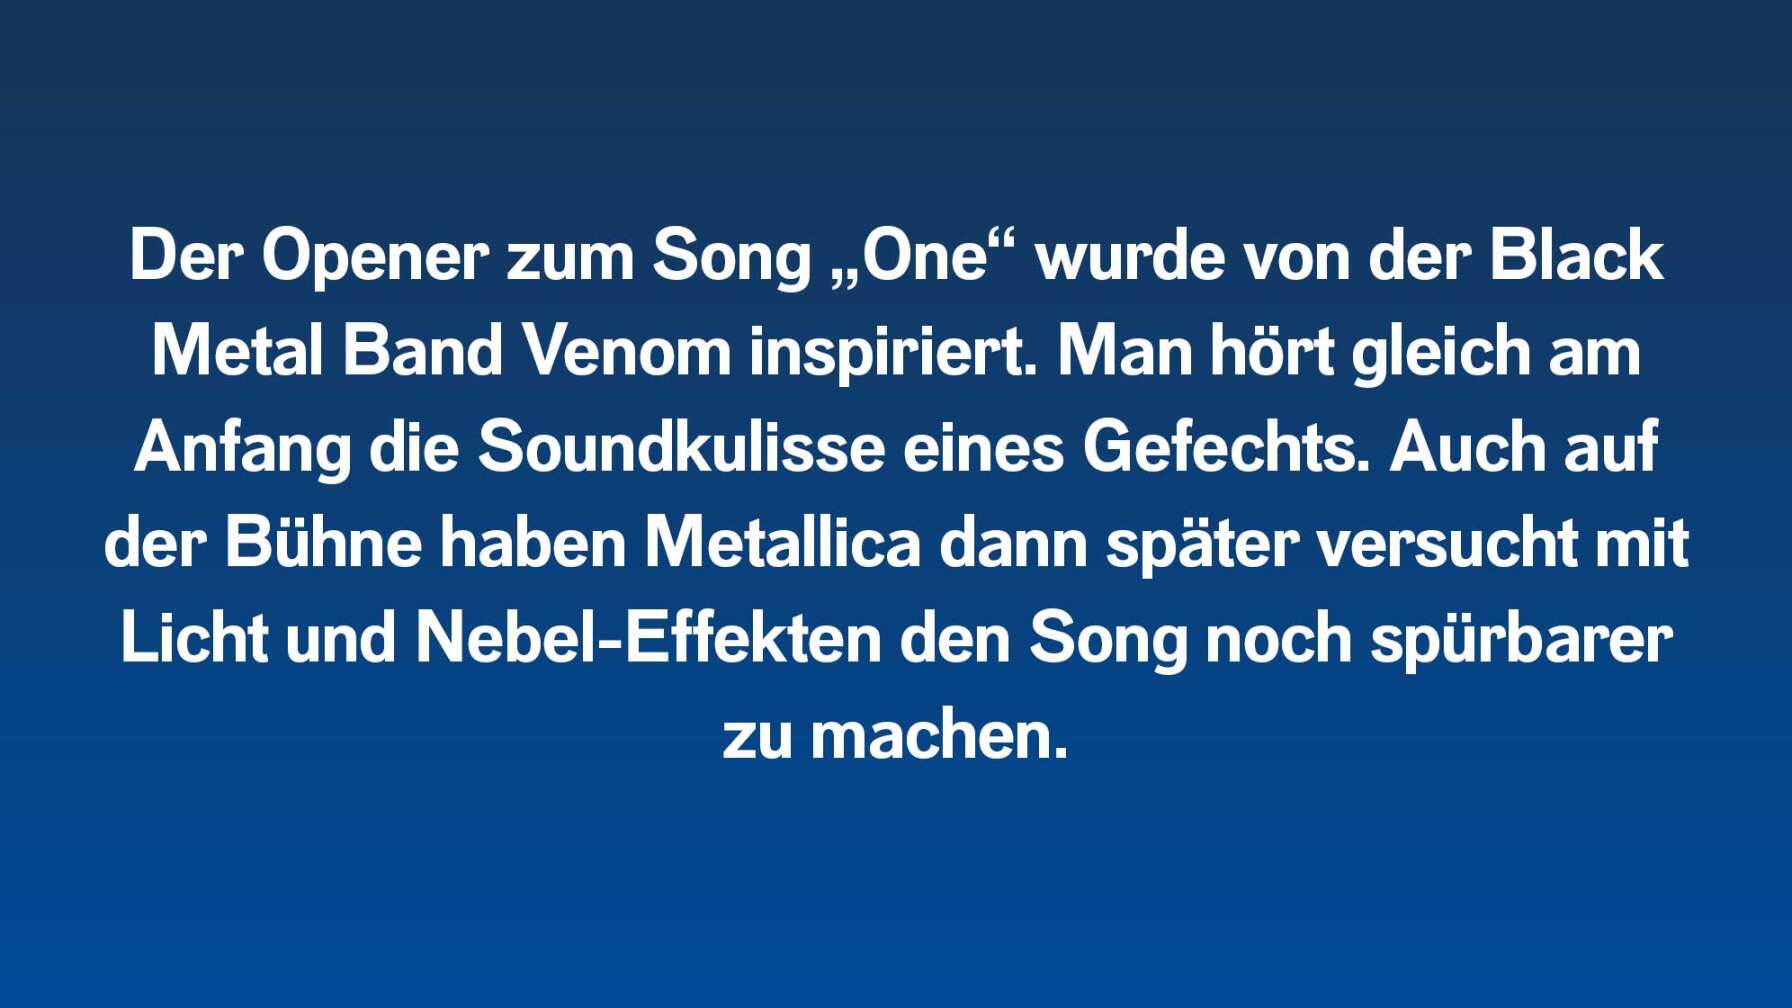 Der Opener zum Song „One“ wurde von der Black Metal Band Venom inspiriert. Man hört gleich am Anfang die Soundkulisse eines Gefechts. Auch auf der Bühne haben Metallica dann versucht mit Licht und Nebel-Effekten den Song noch mehr spürbar zu machen.